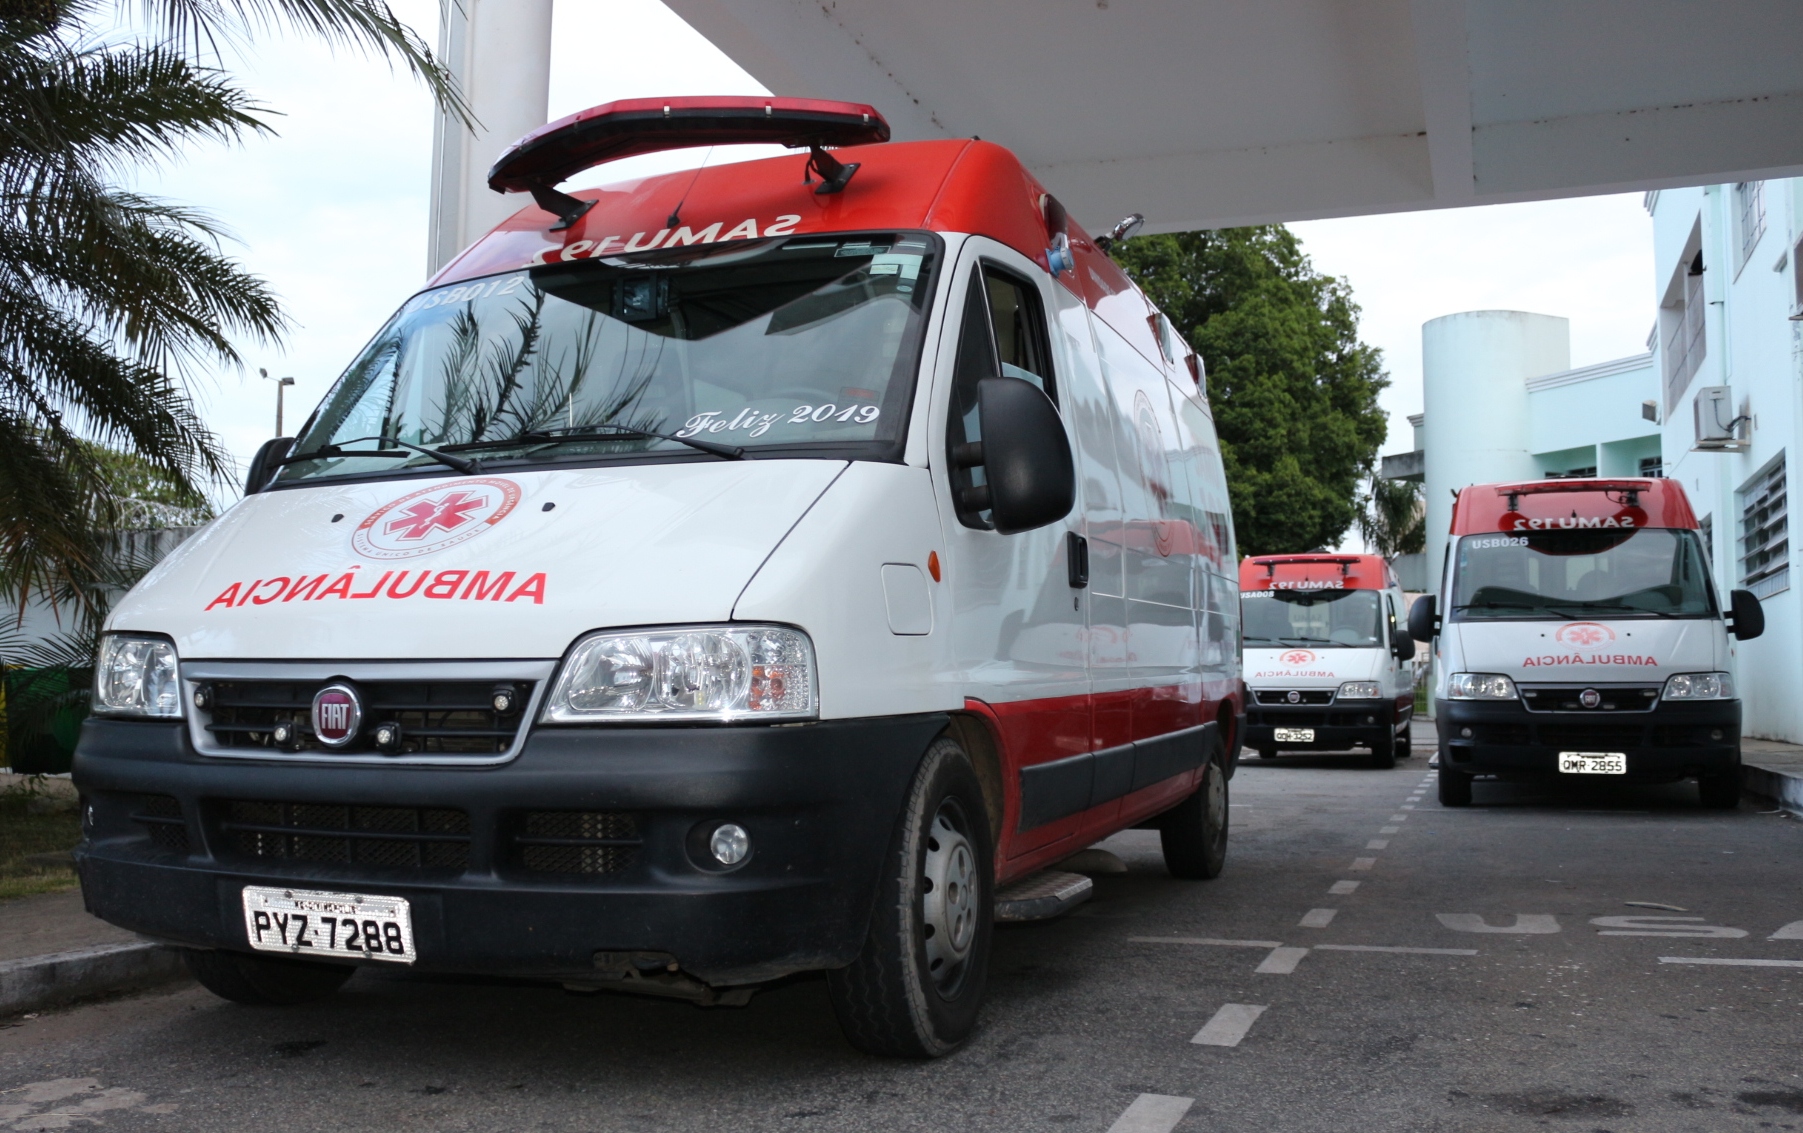 24h: SAMU registra colisão e atropelamento em Itaúna